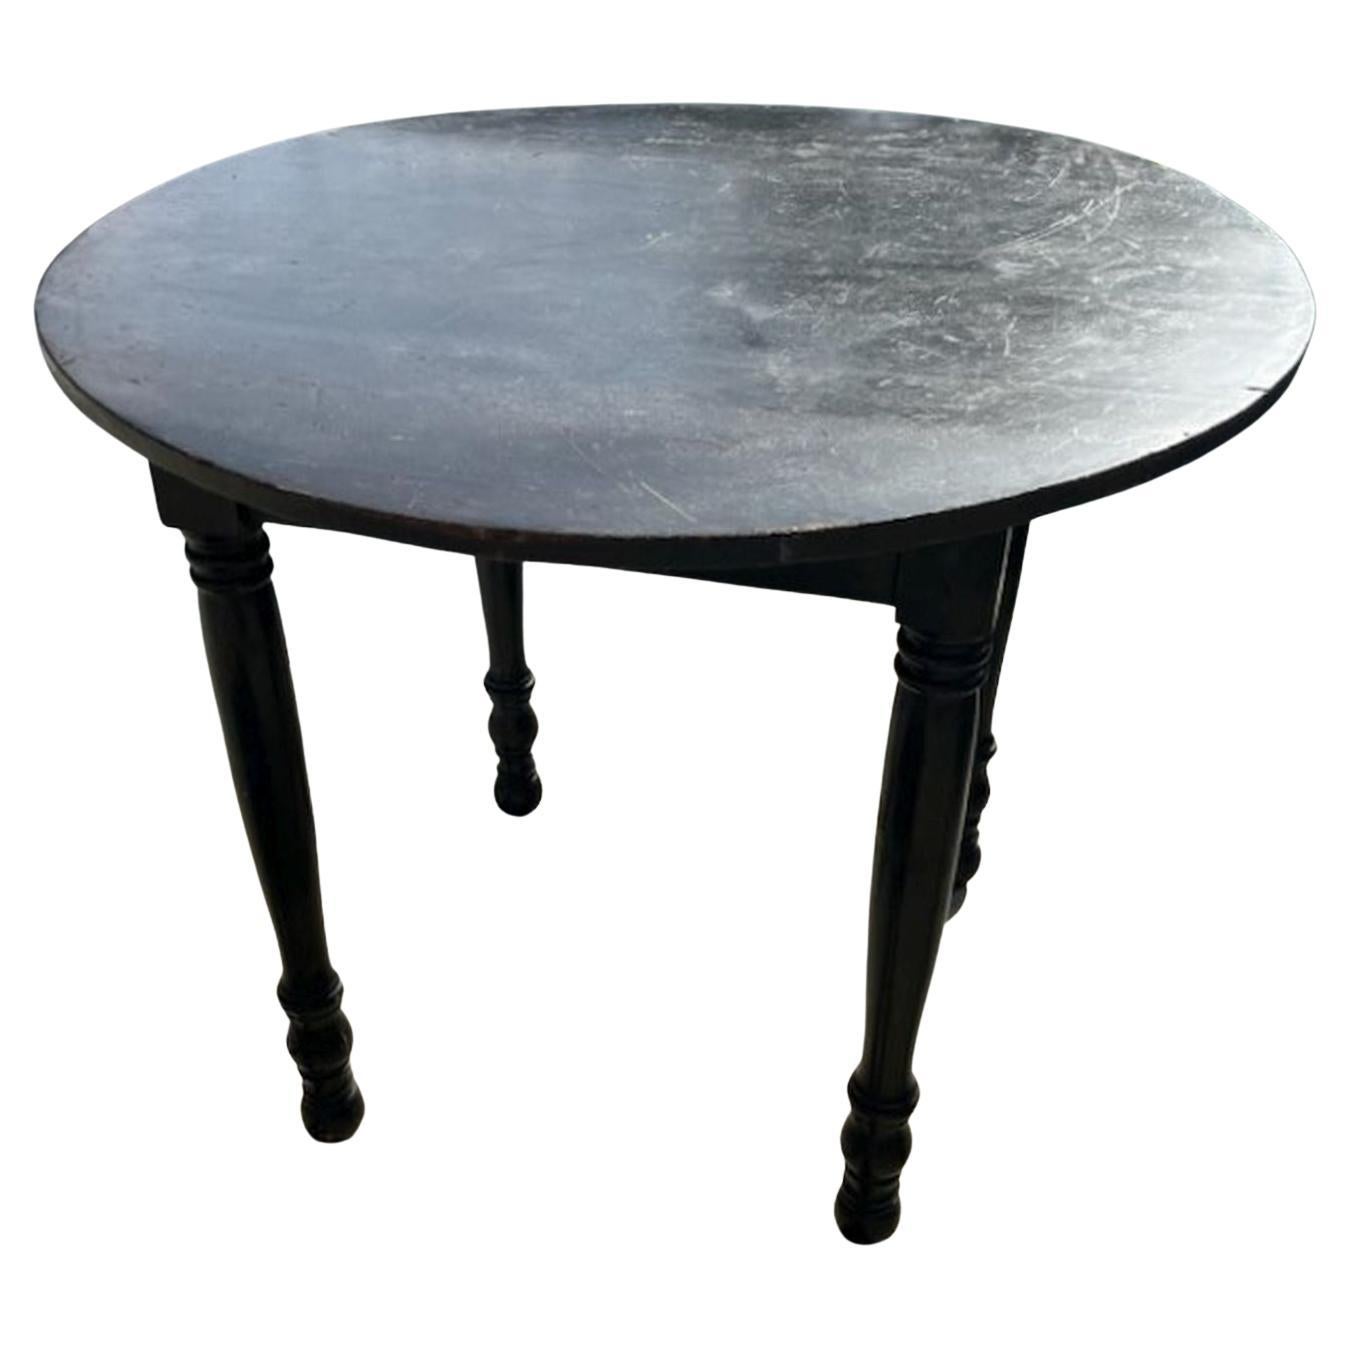 Table de taverne ronde peinte en noir du XIXe siècle